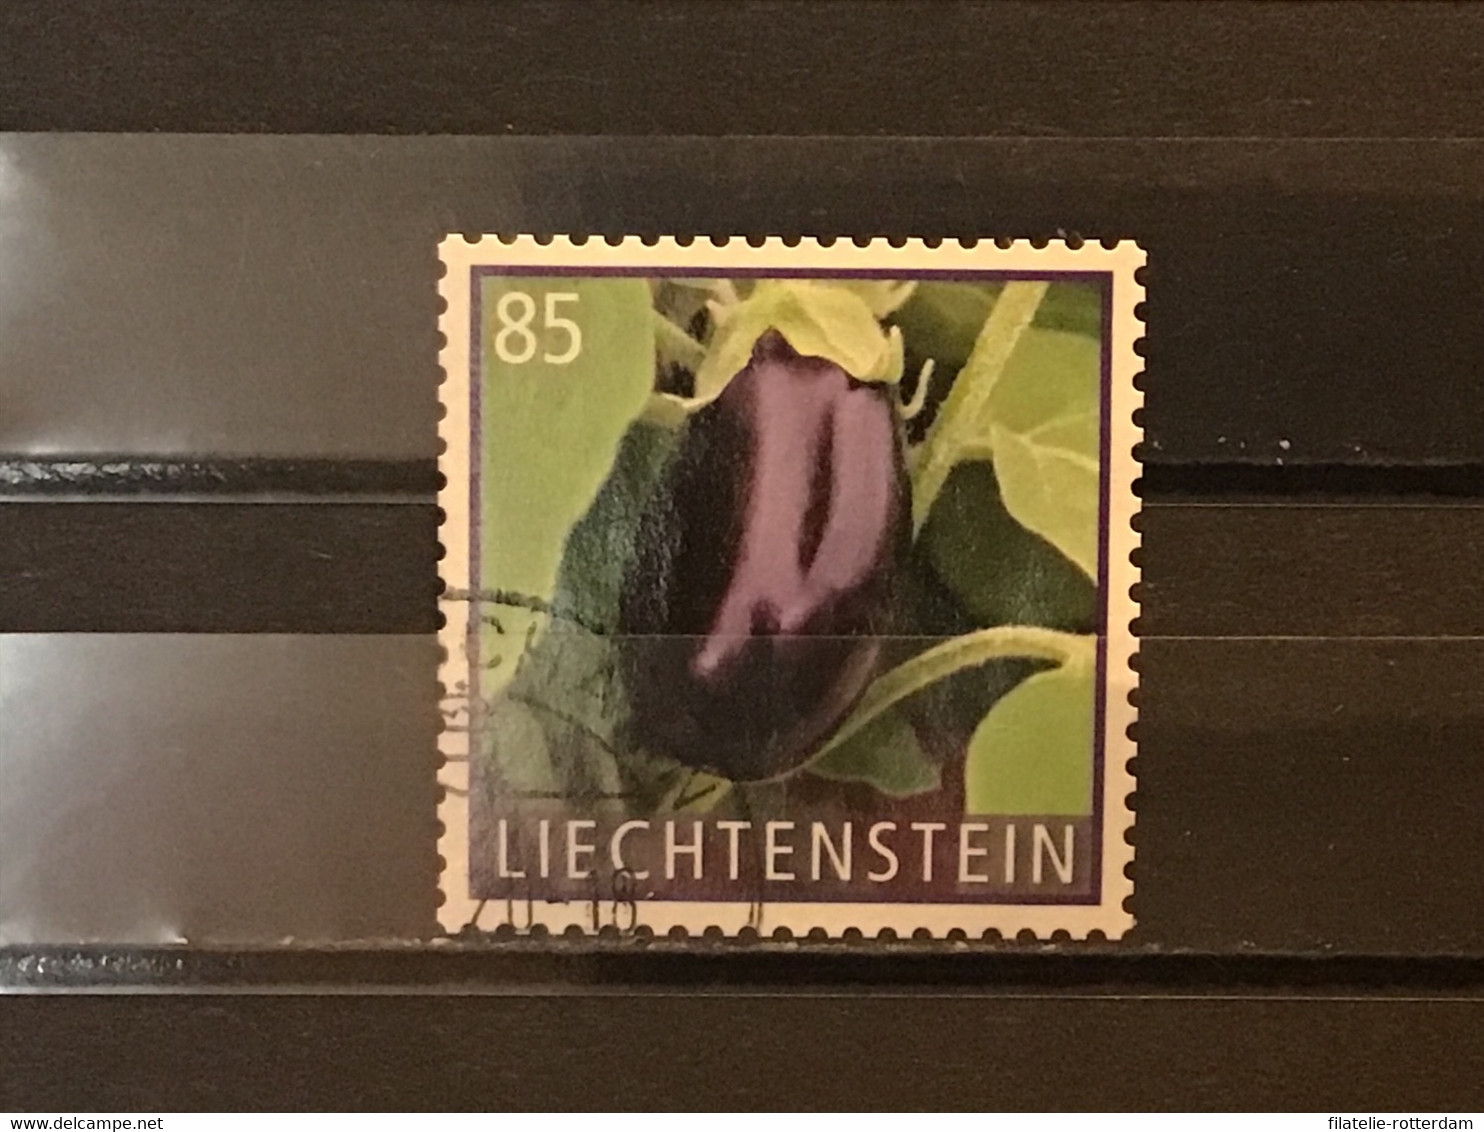 Liechtenstein - Groenten (0.85) 2018 - Used Stamps